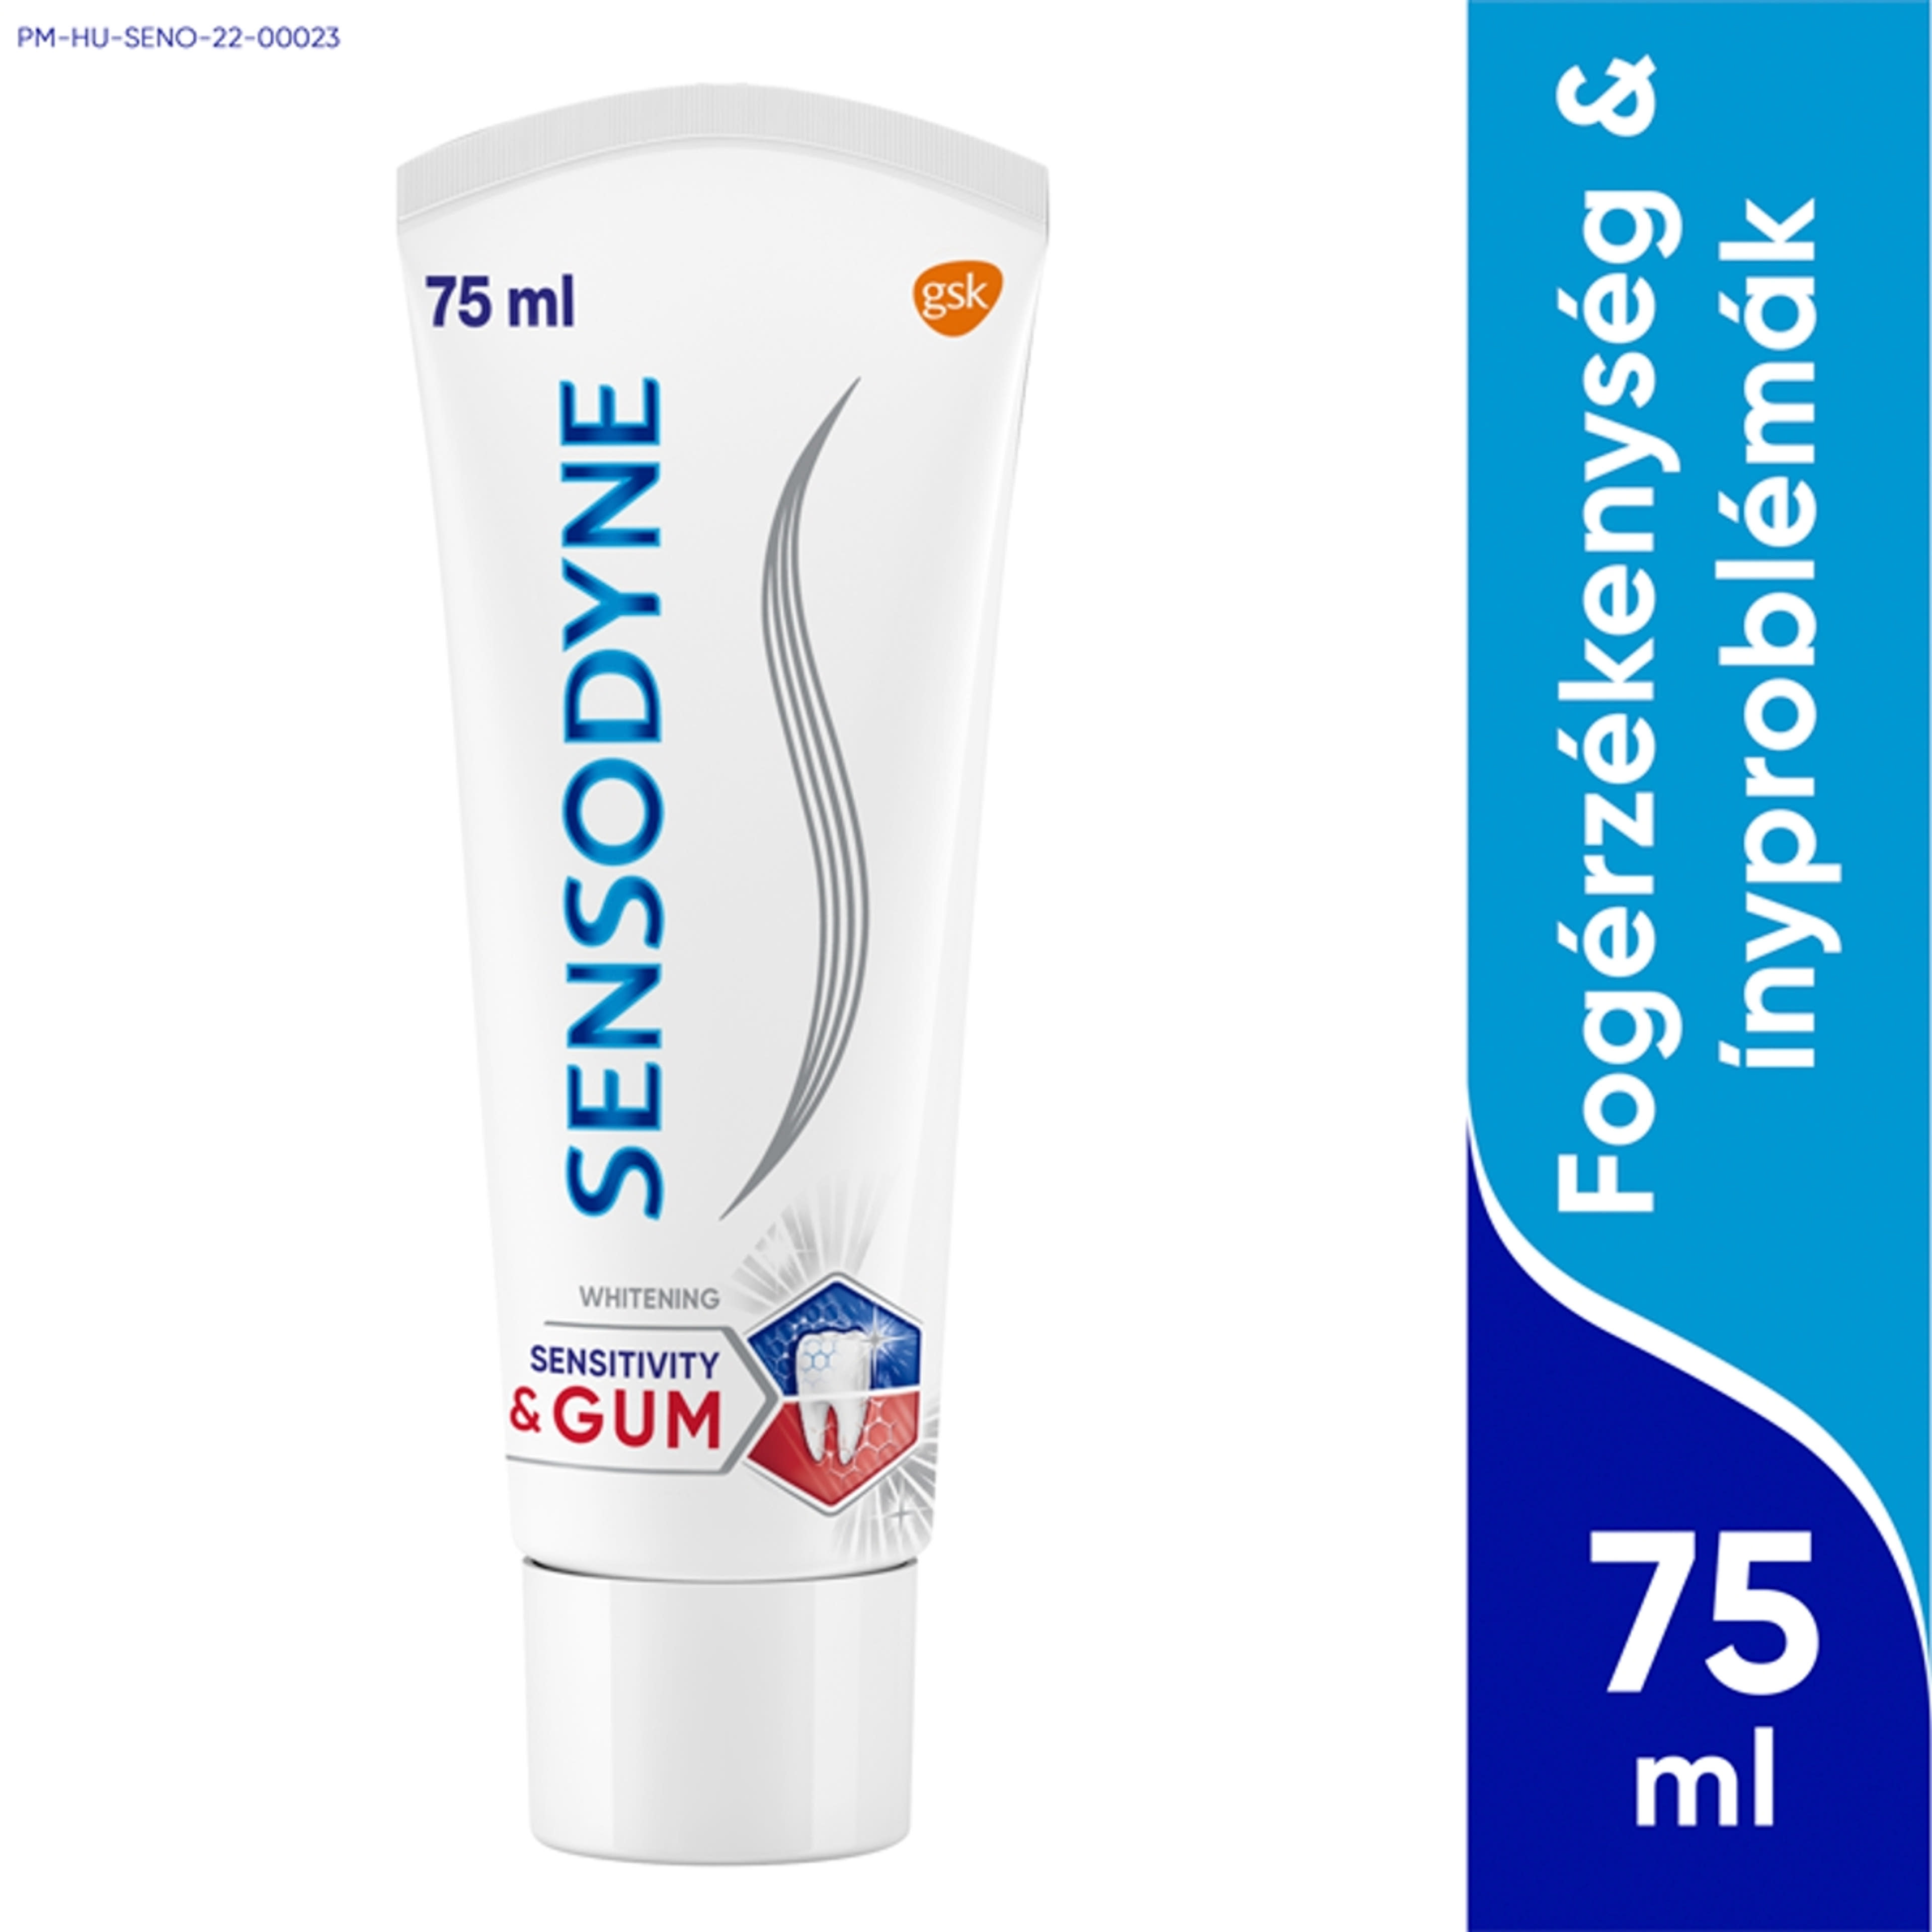 Sensodyne Sensitivity & Gum Whitening fogkrém - 75 ml-1